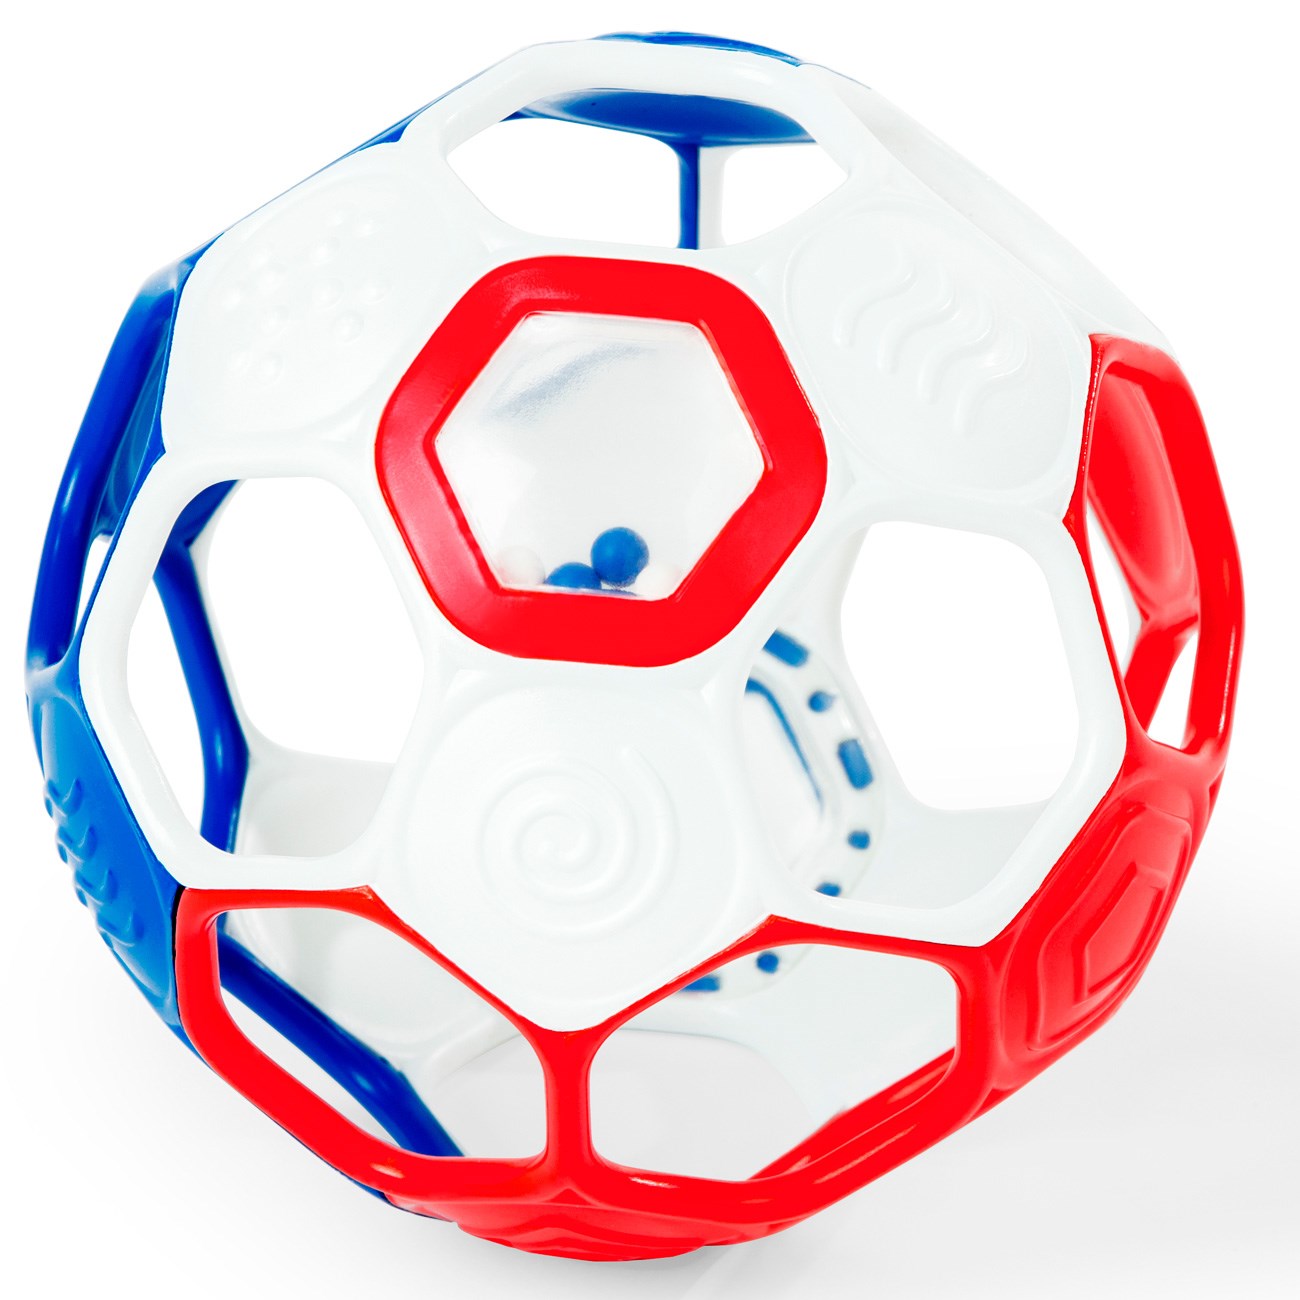 Oball Soccer Football (Red/White/Blue)